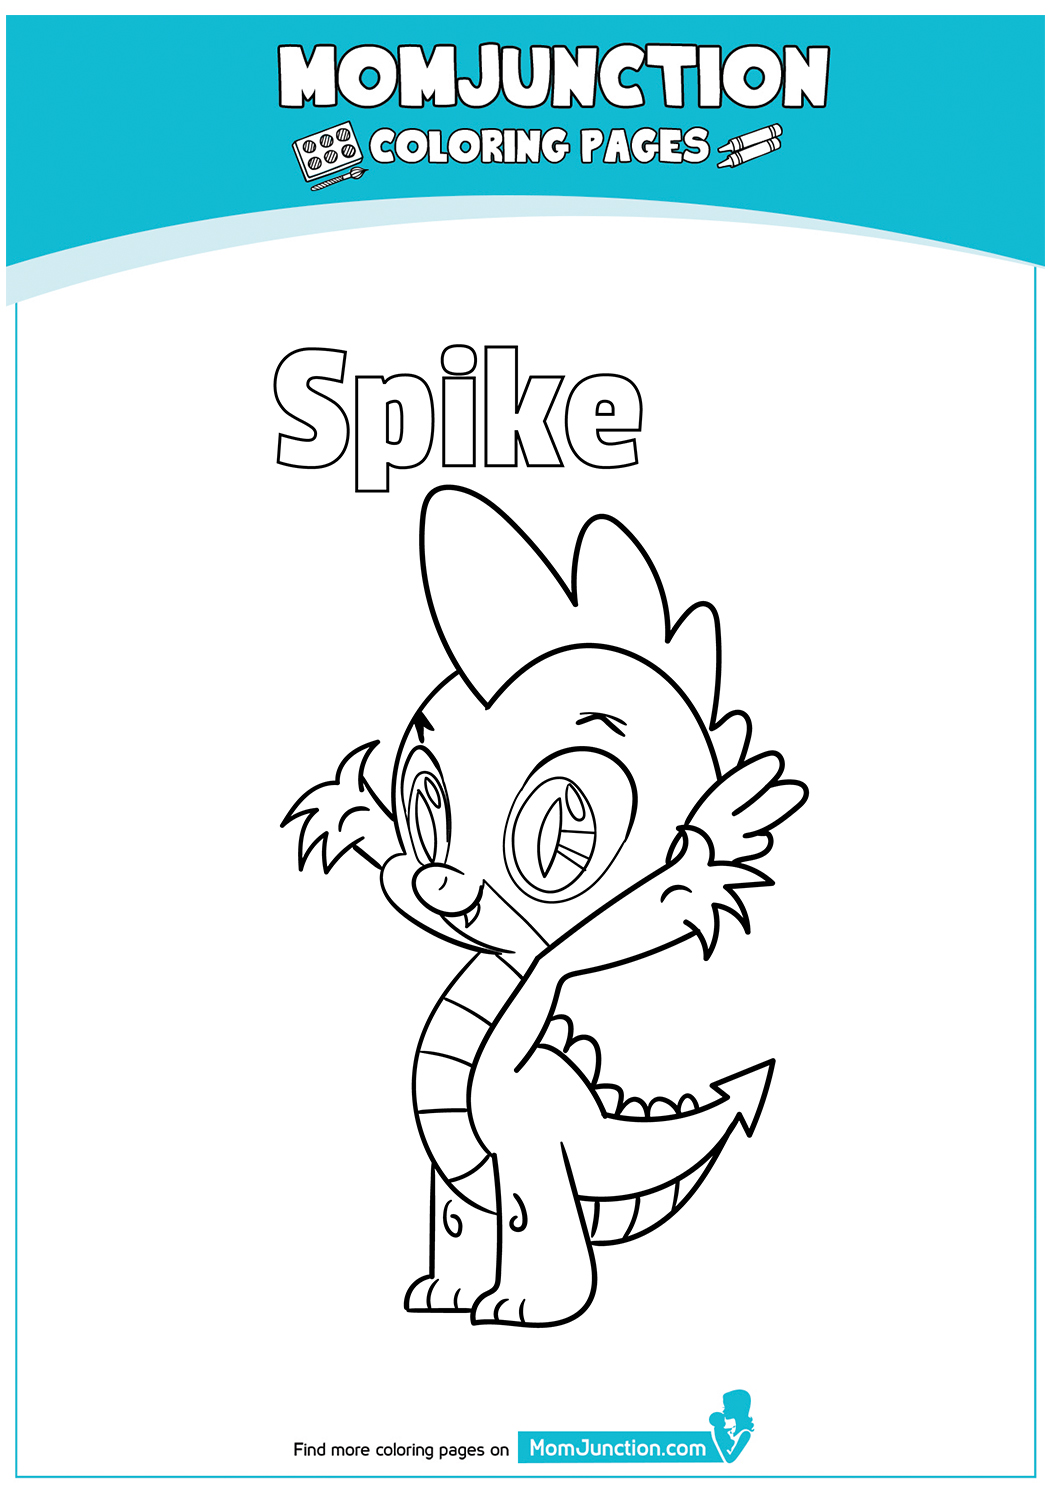 Spike-17